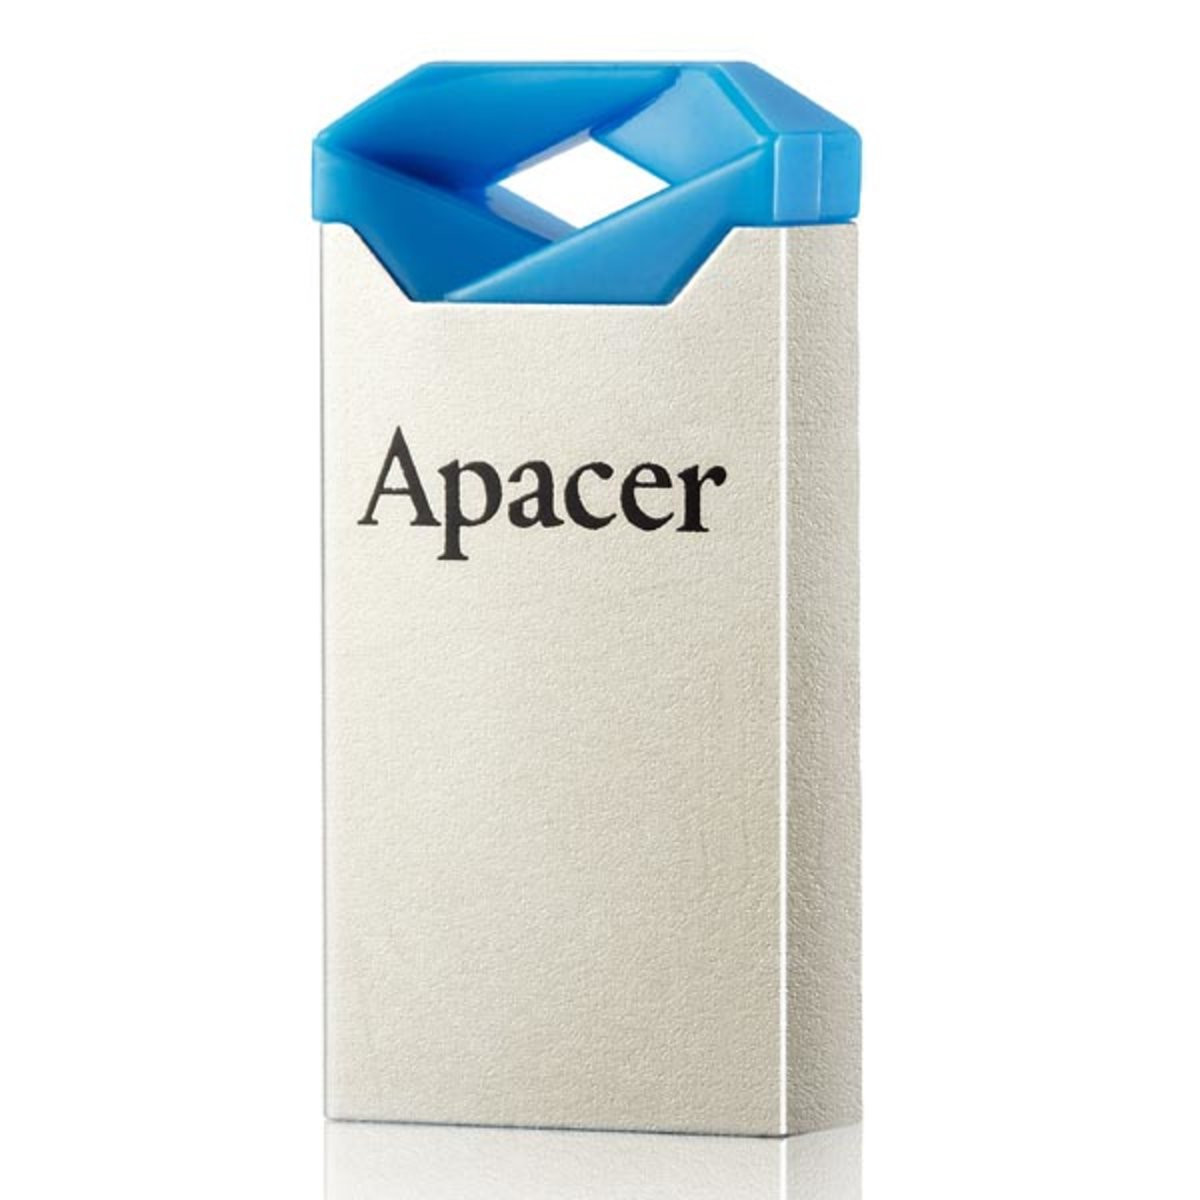 Flash Apacer USB 2.0 AH111 16GB blue - 2